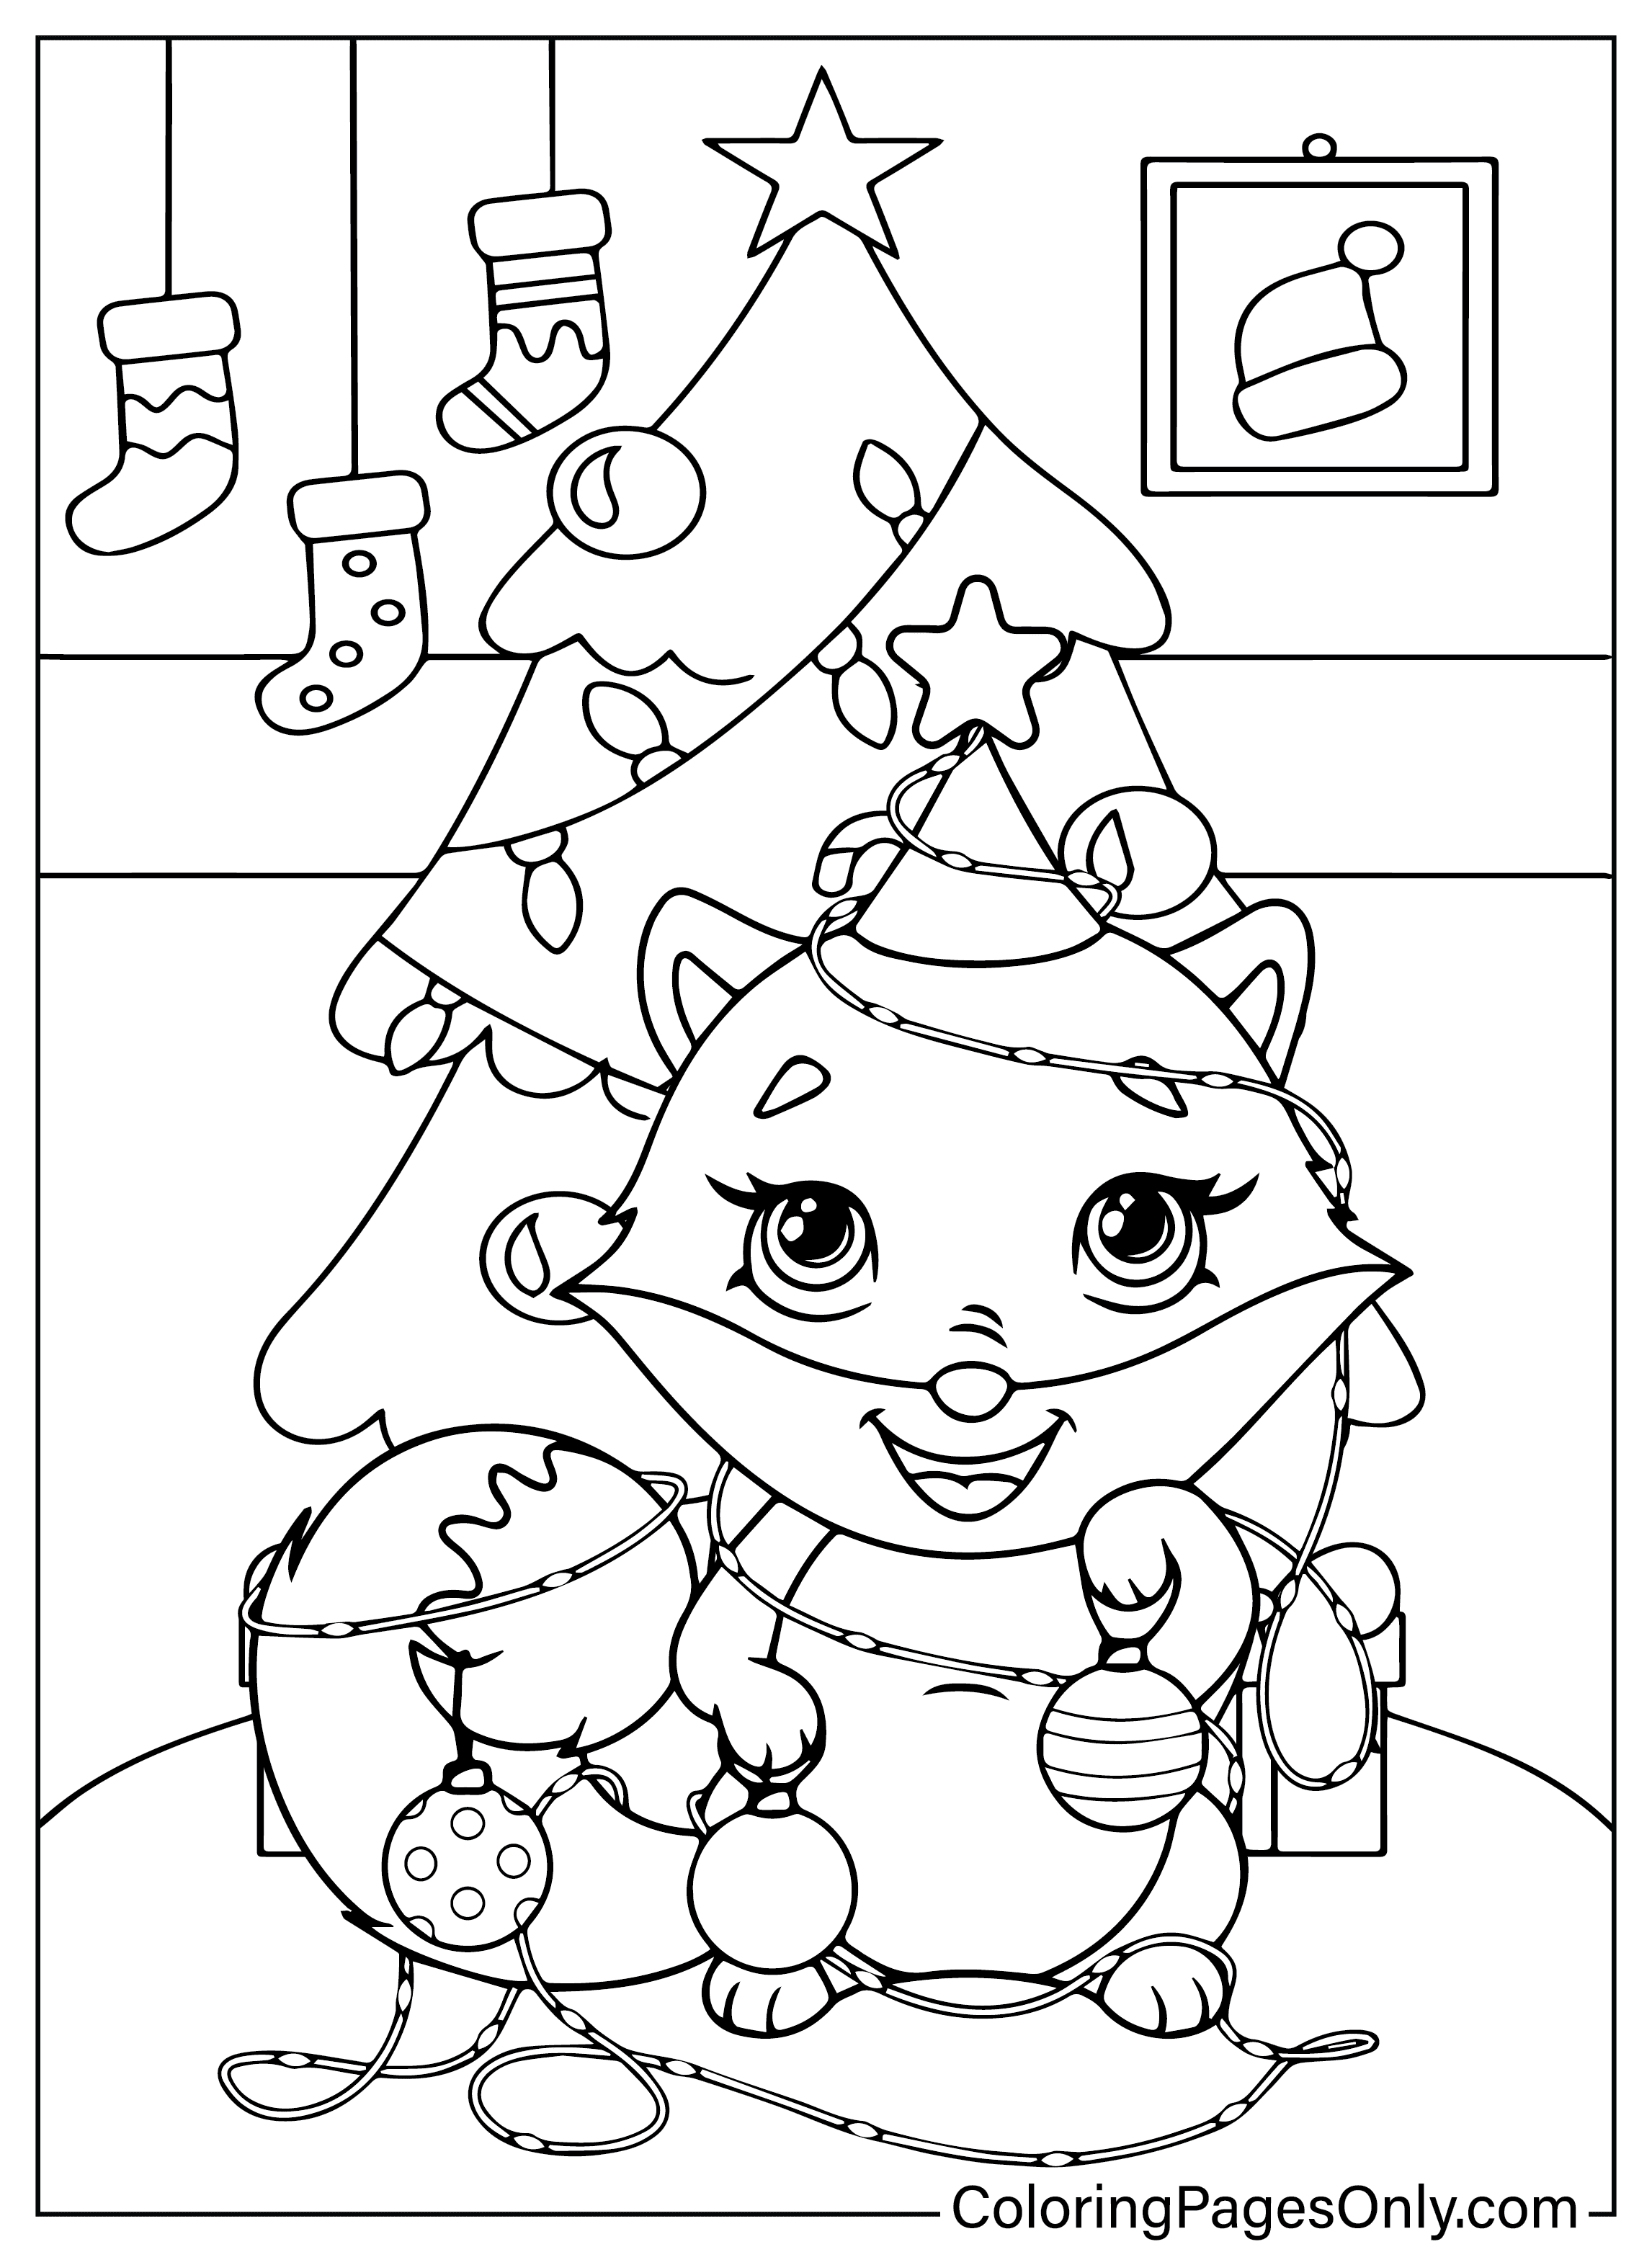 可爱的圣诞彩页可免费打印圣诞动物